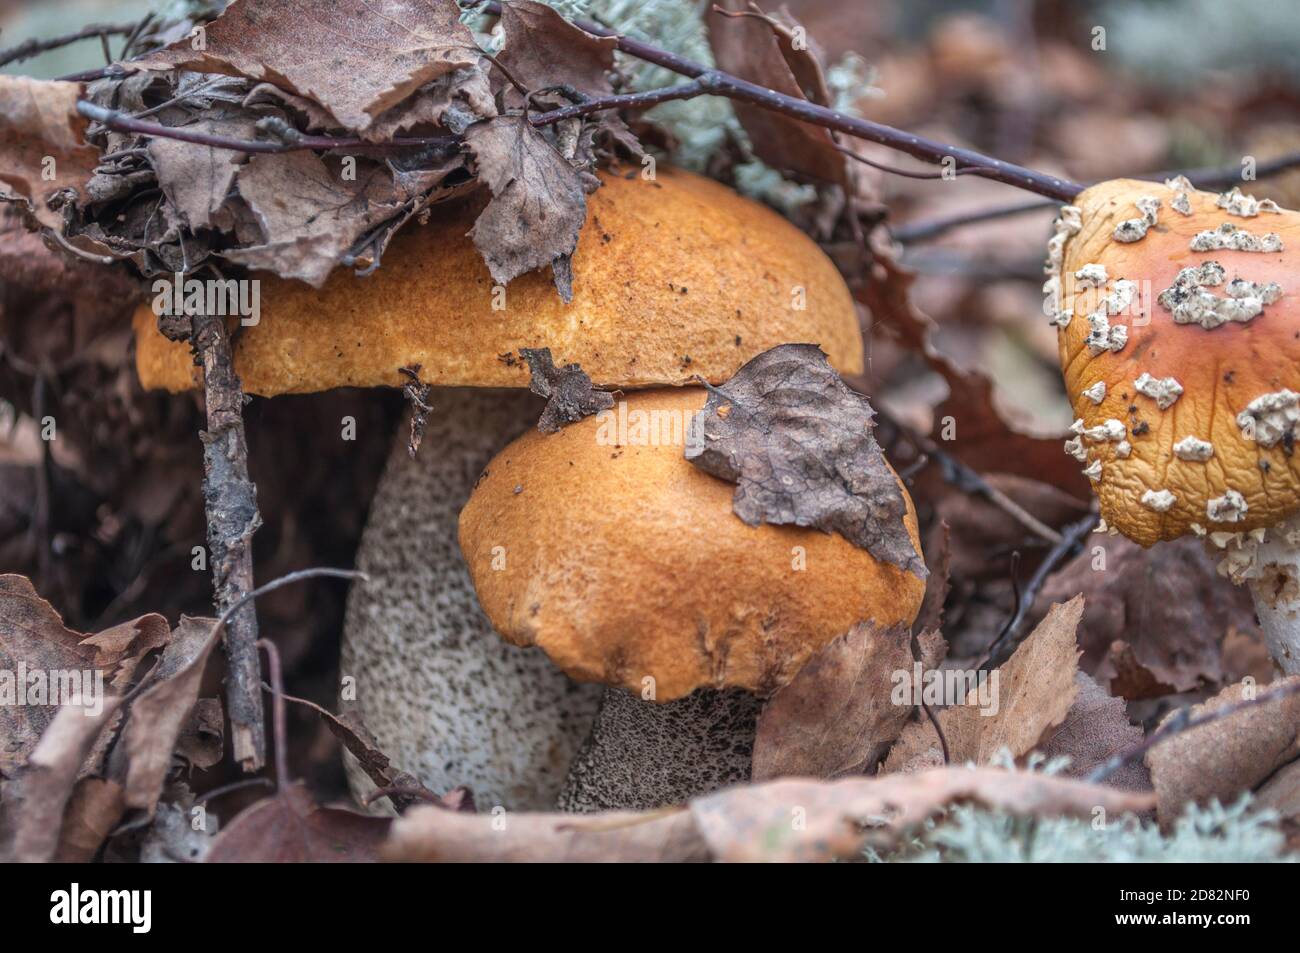 Deux champignons de bouleau avec une casquette orange dans une feuille d'arbre tombée près d'un tabouret séché, chapeau sous les feuilles, macro photo Banque D'Images